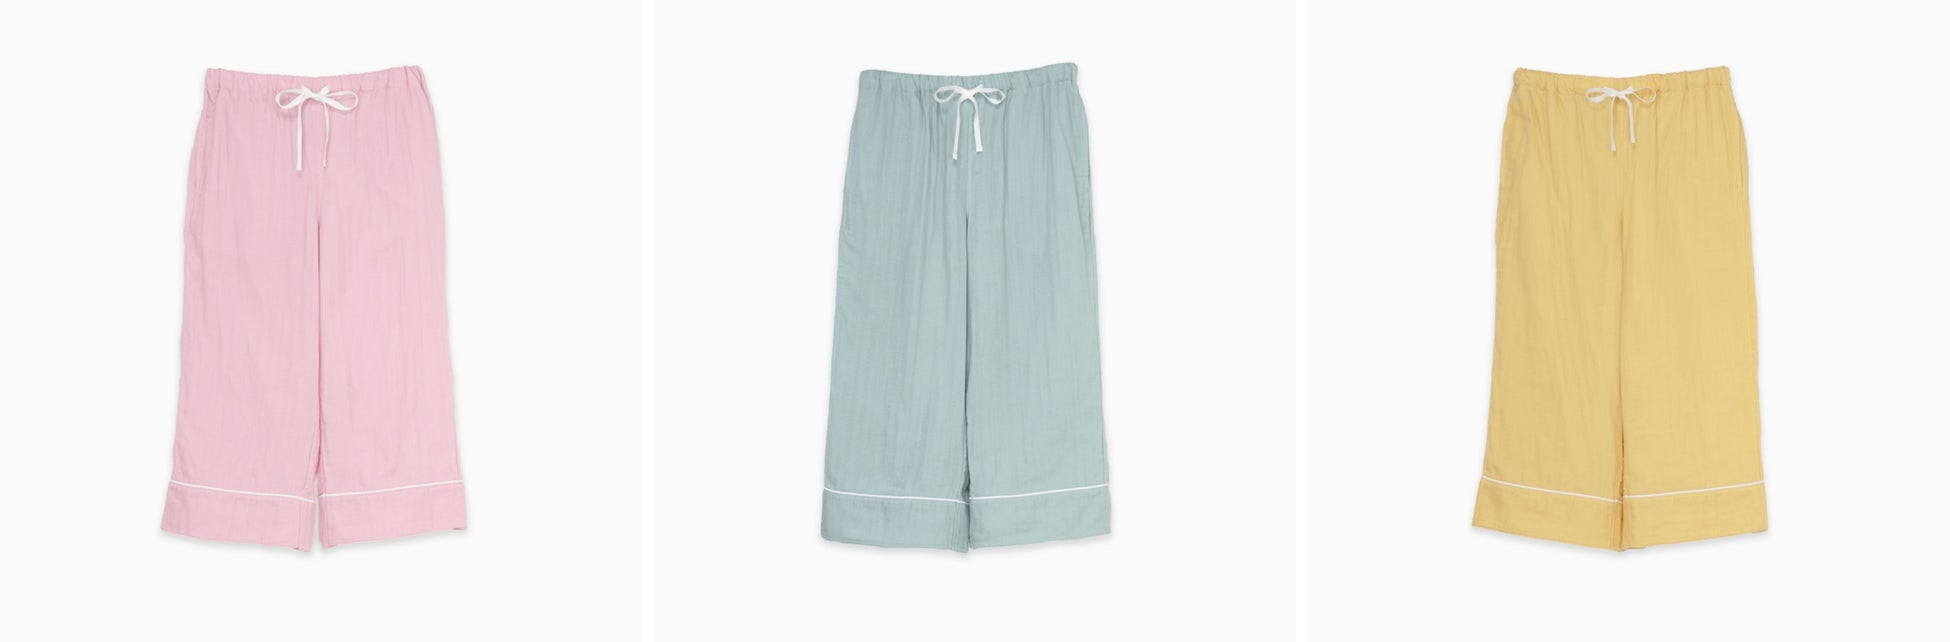 【新商品】「Kaimin Labo」×リサ・ラーソンのパジャマが新発売